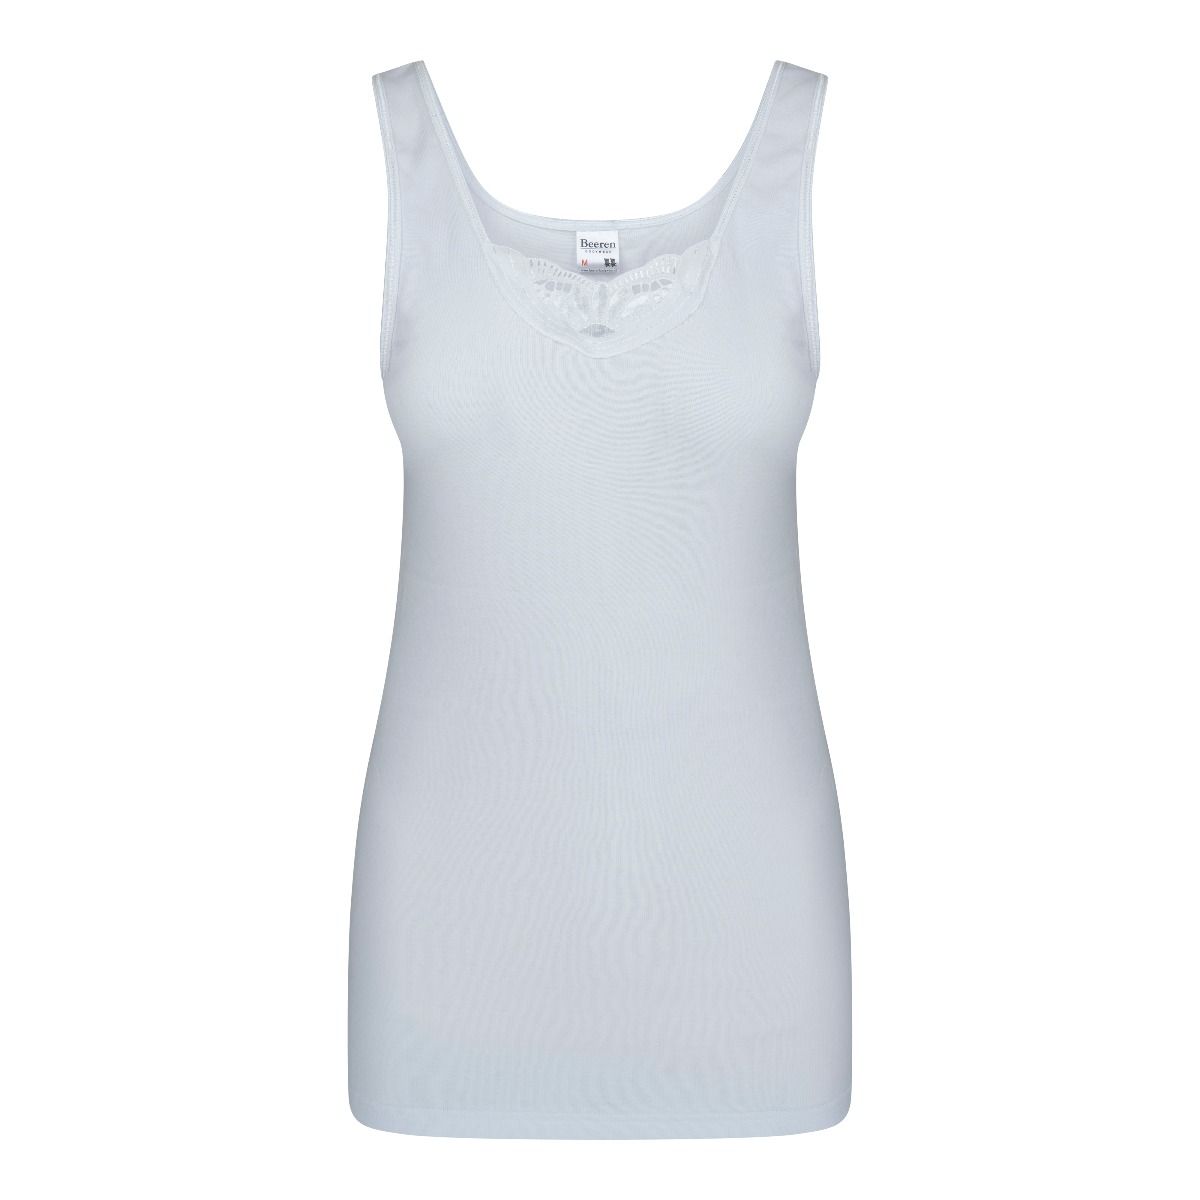 vernieuwen Intact Stratford on Avon Dames hemd Brenda wit-Beeren dames hemden online kopen.